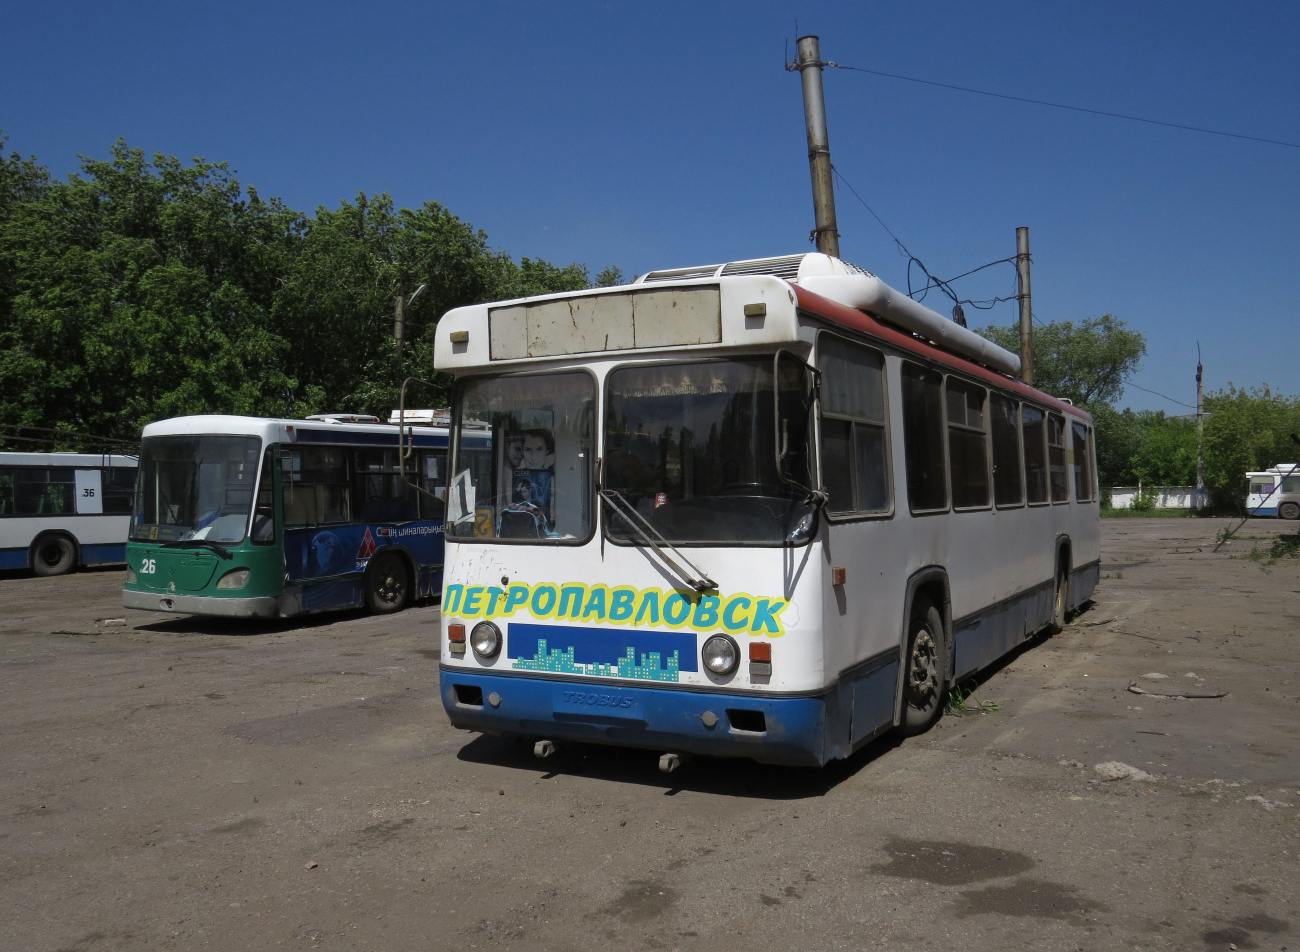 Petropavlovsk, BTZ-5276-04 č. 006